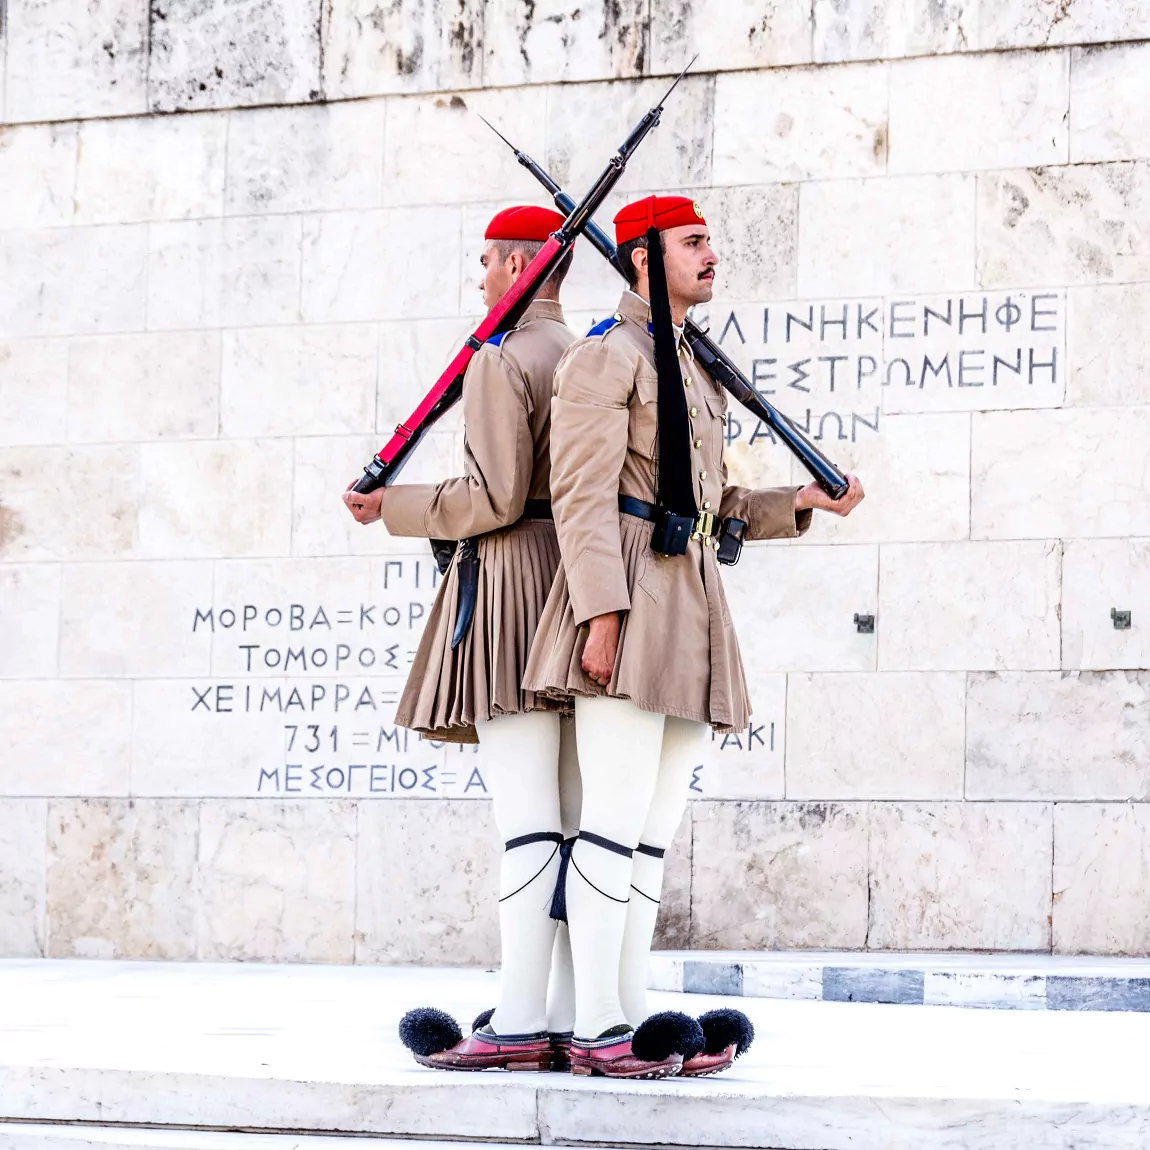 Μνημείο του Άγνωστου Στρατιώτη - Αθήνα